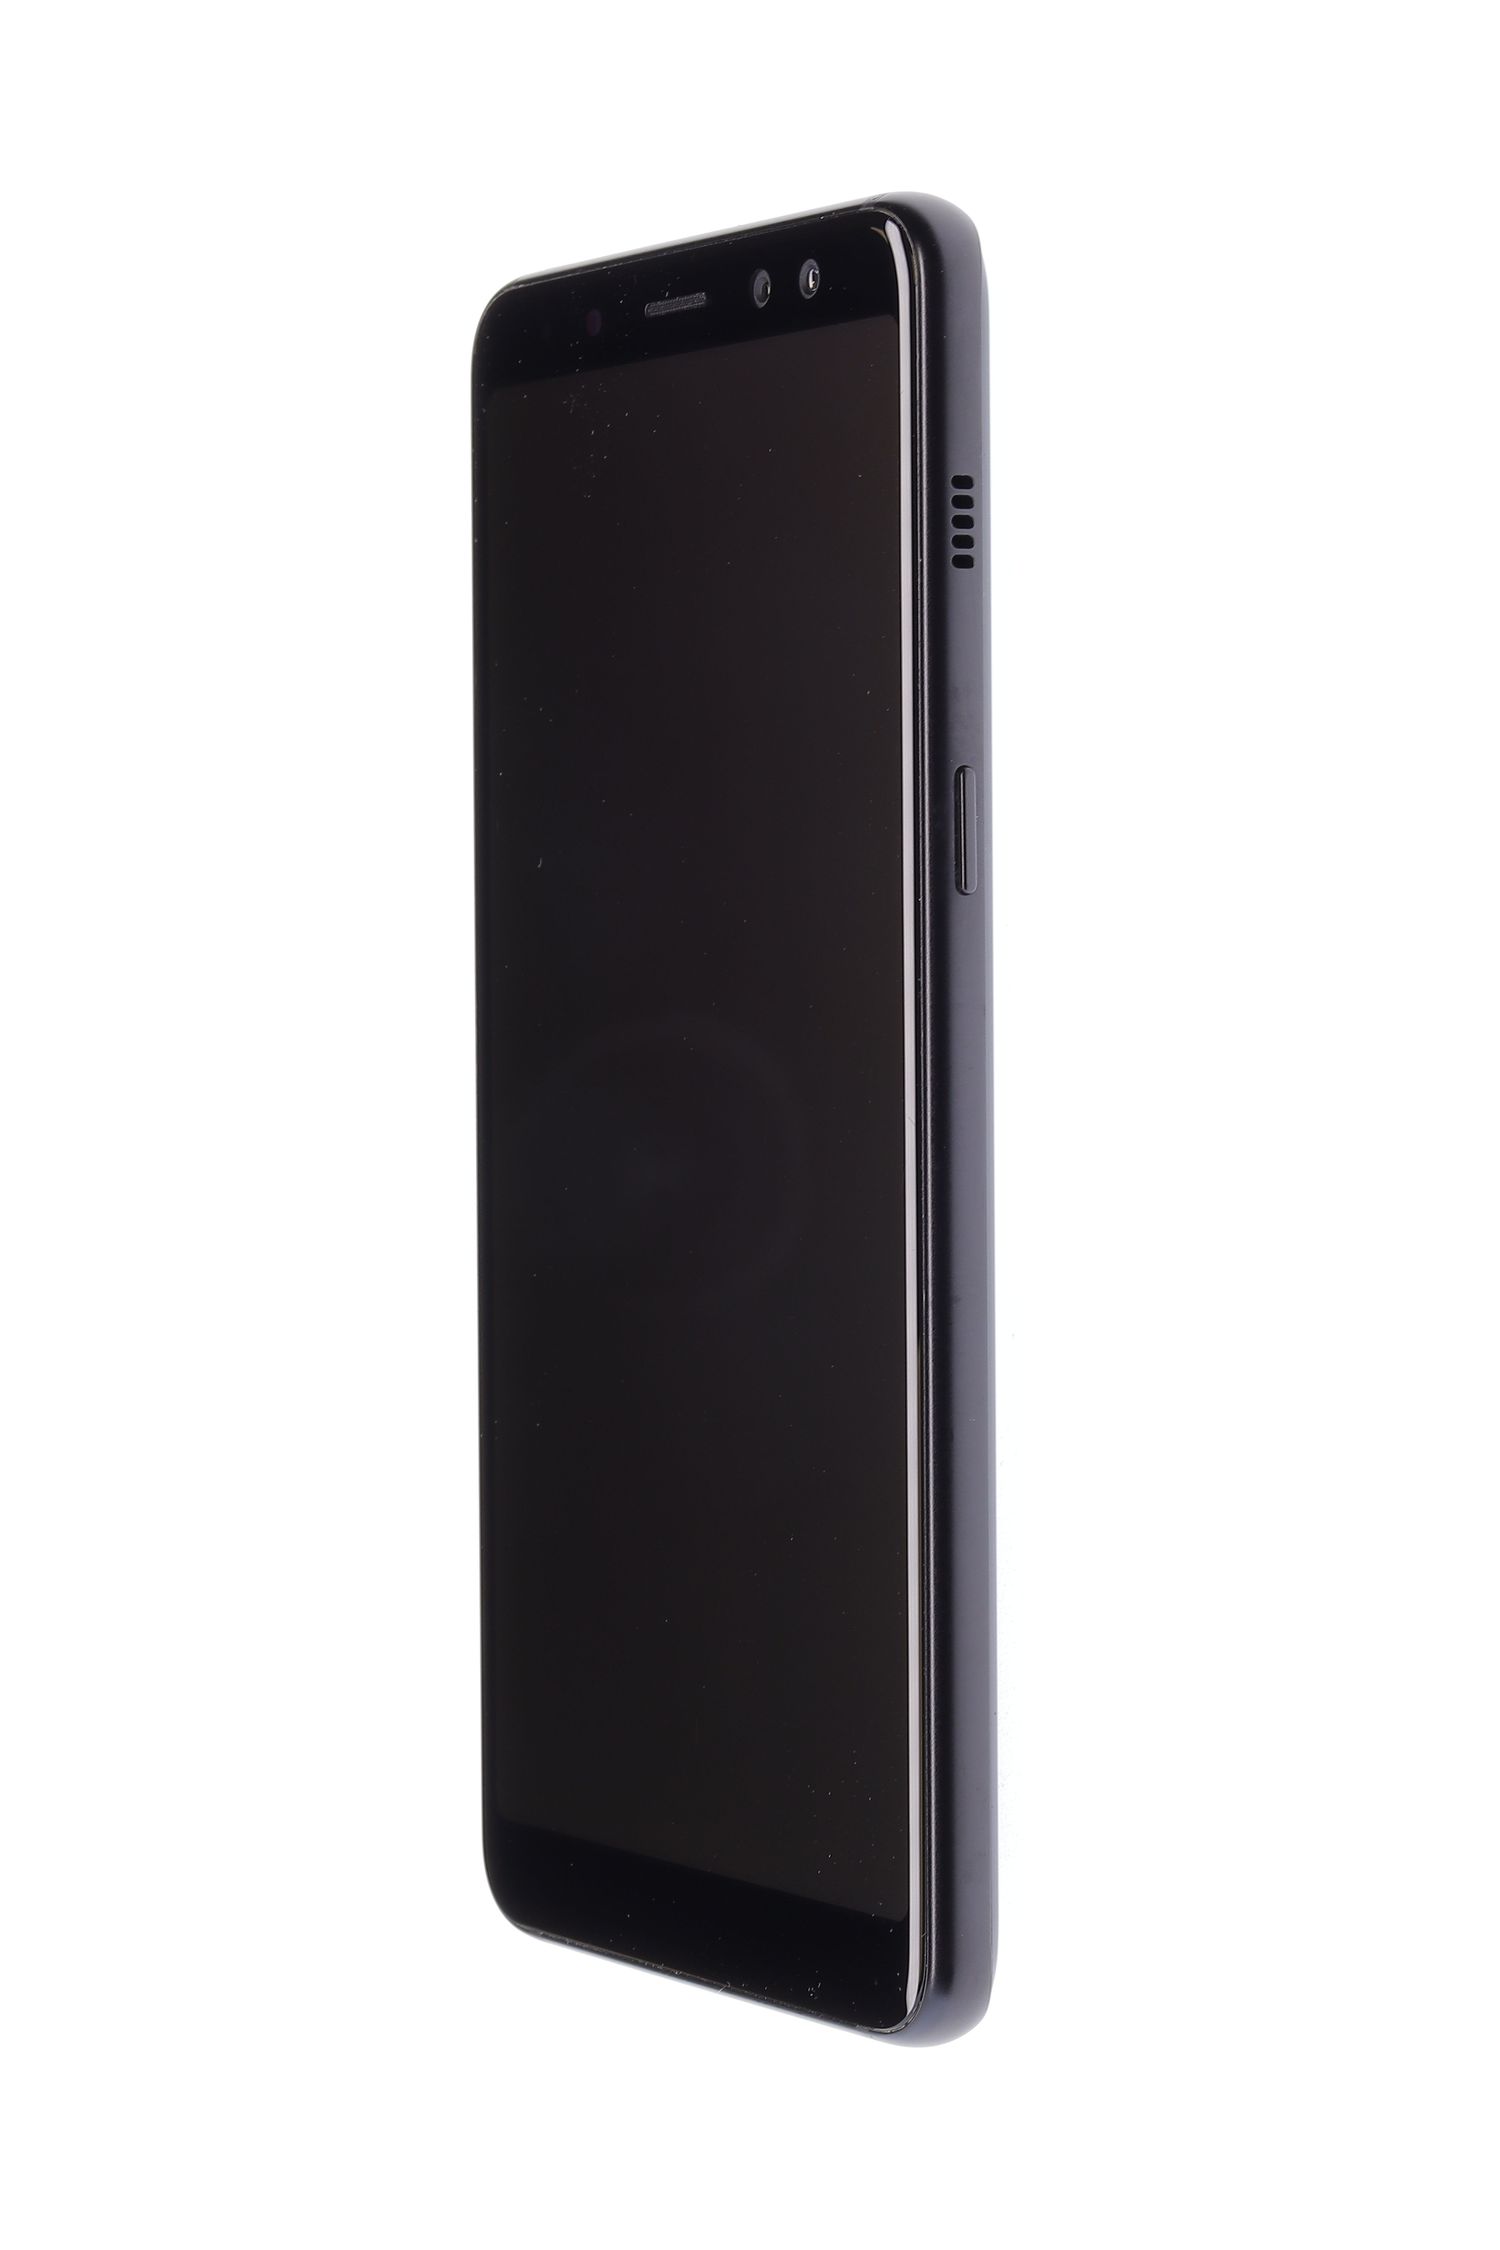 Κινητό τηλέφωνο Samsung Galaxy A8 (2018), Black, 64 GB, Excelent